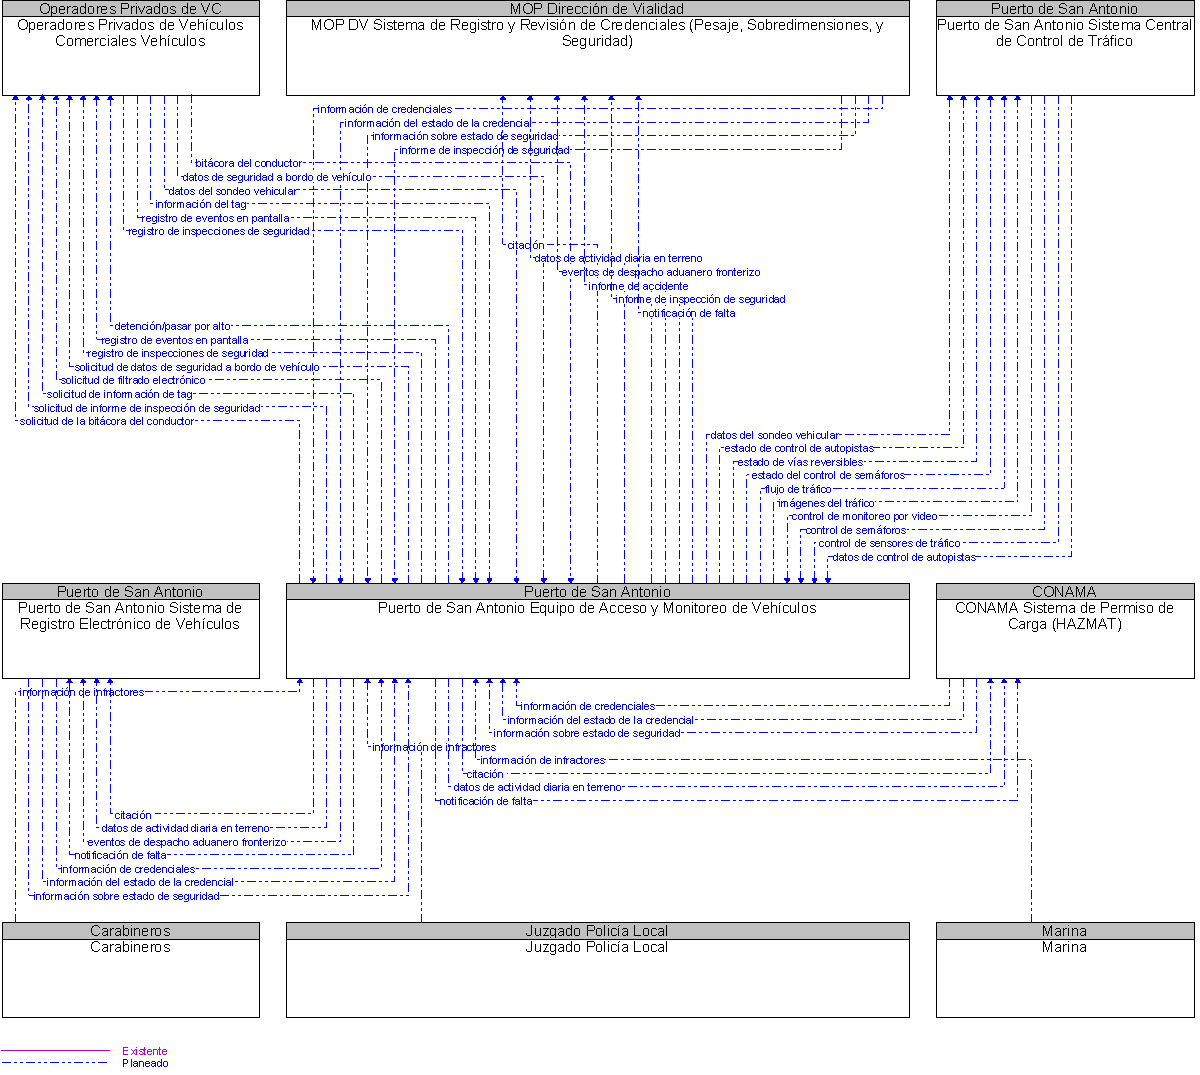 Diagrama Del Contexto por Puerto de San Antonio Equipo de Acceso y Monitoreo de Vehculos